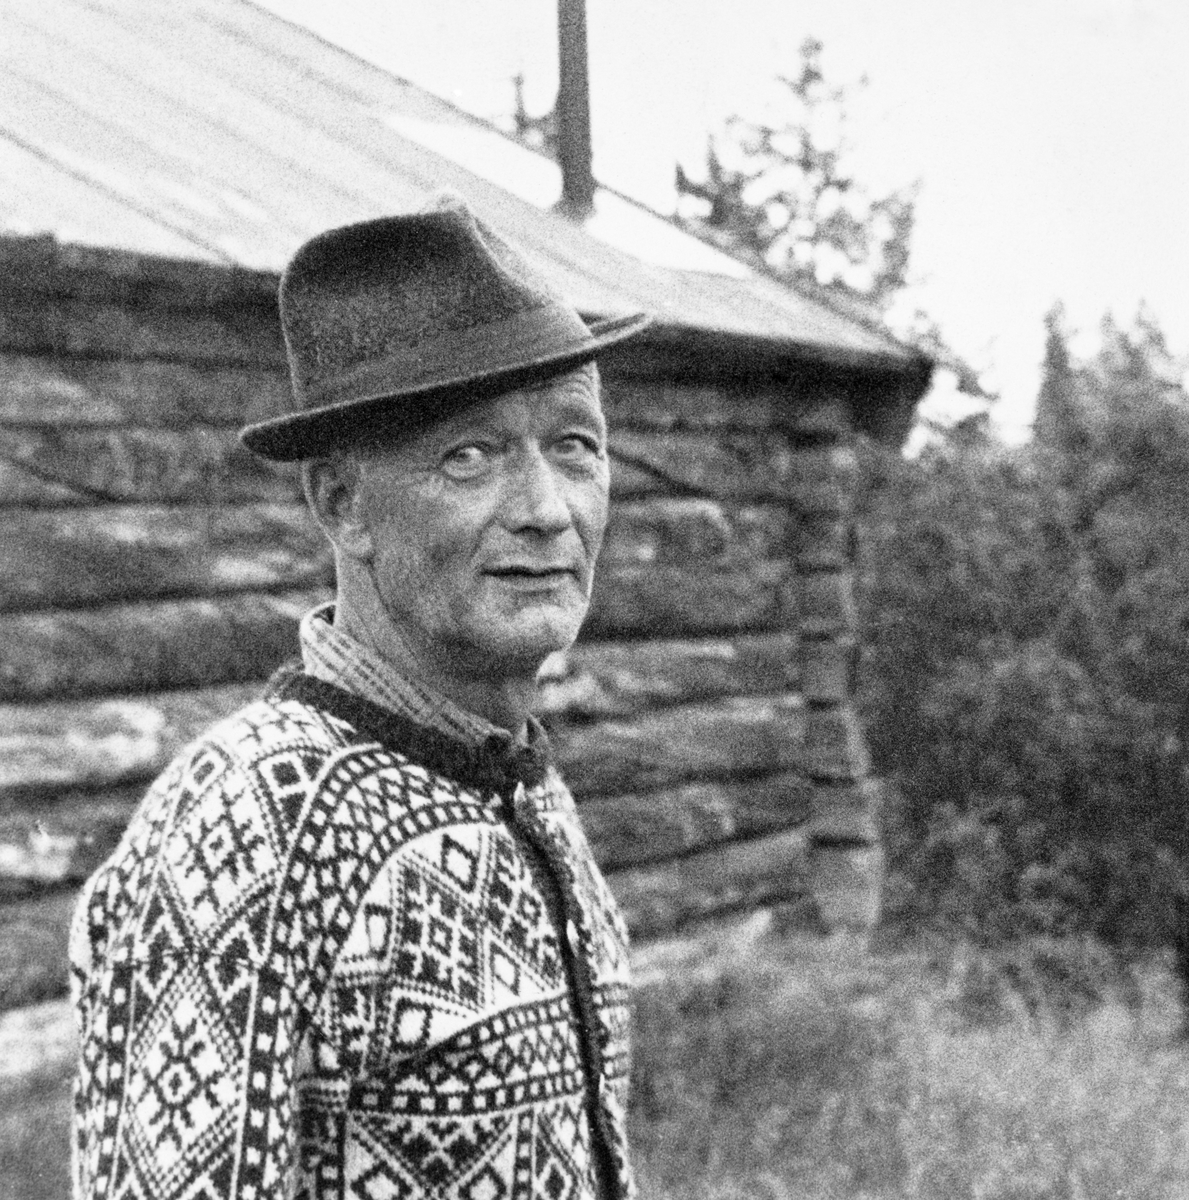 Tømmerkjører Bernhard Bordi (1909-1995) i Pasvikdalen.  Bordi er fotografert i strikkejakke og med hatt foran ei koie.  Fotografiet er brukt i en artikkel om Bordi i tidsskriftet Statsskog nr. 2 1976.